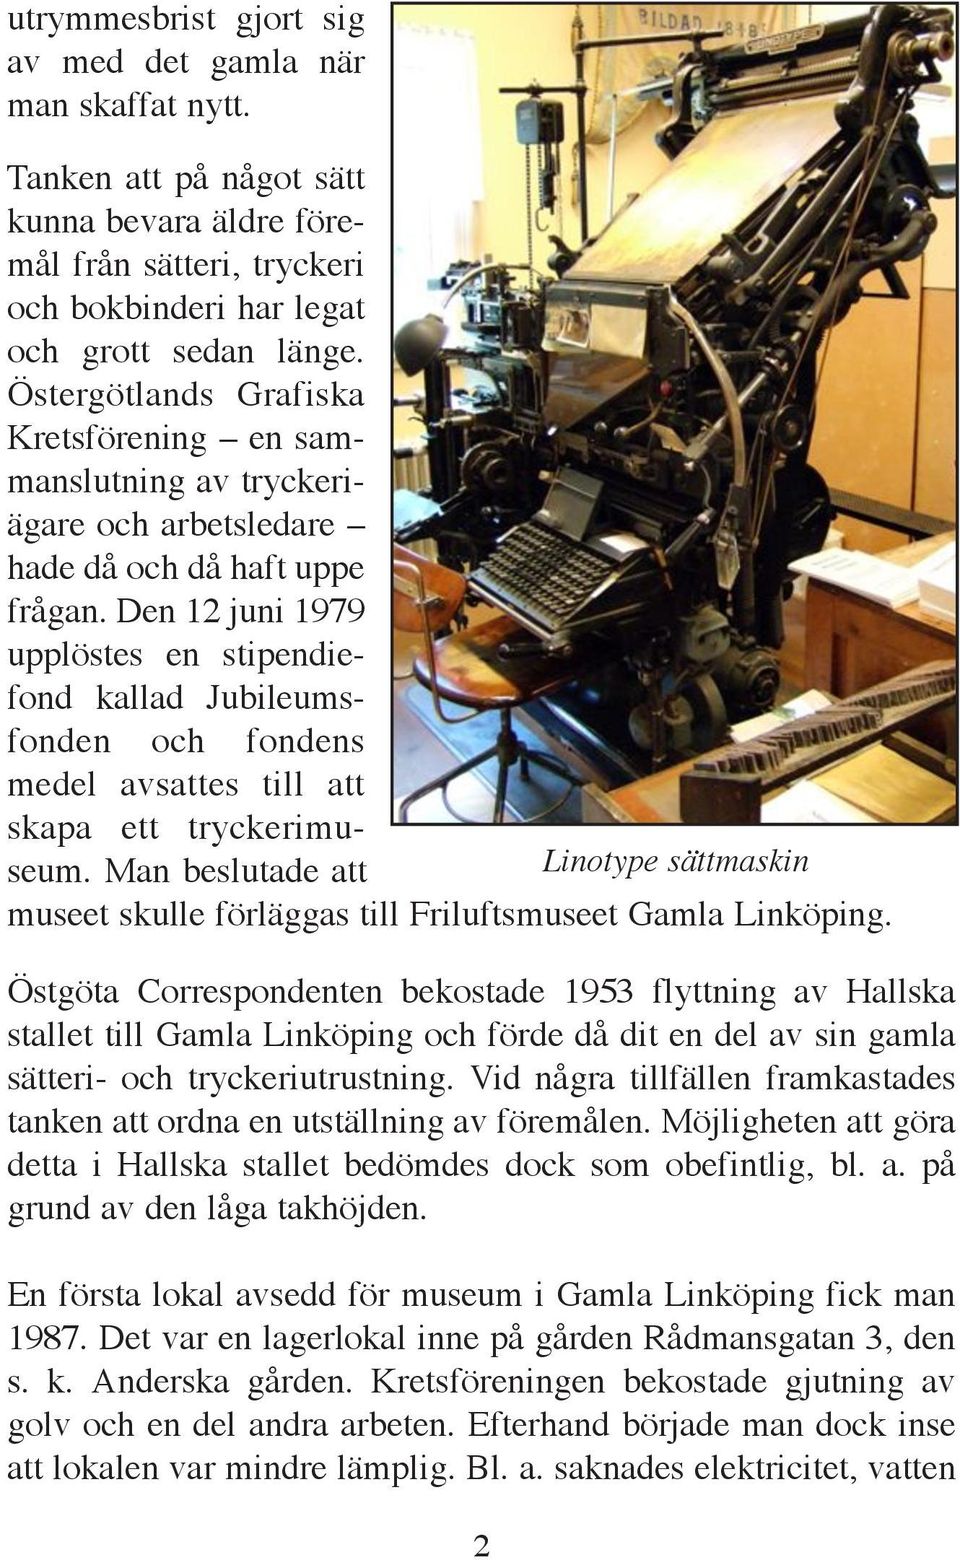 Den 12 juni 1979 upplöstes en stipendiefond kallad Jubileumsfonden och fondens medel avsattes till att skapa ett tryckerimuseum.